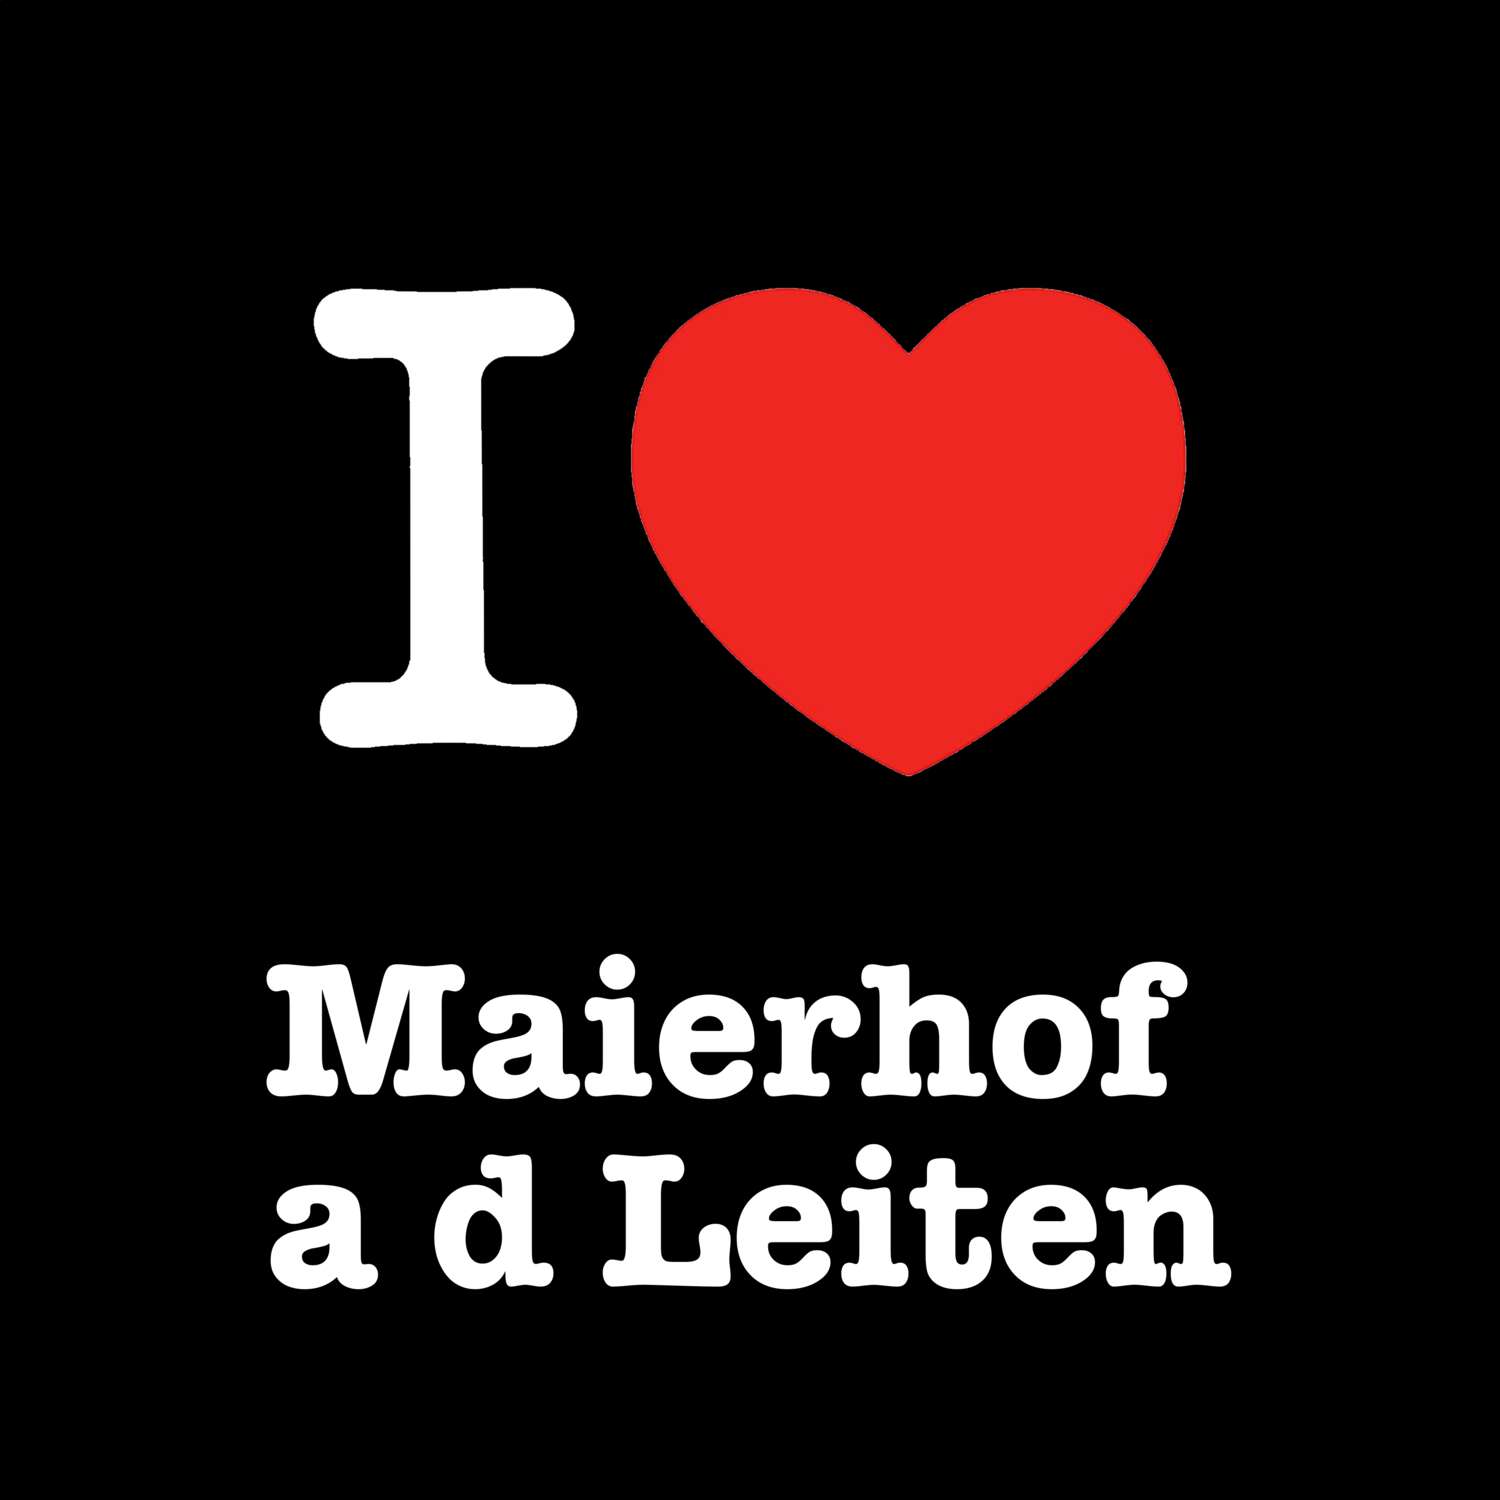 Maierhof a d Leiten T-Shirt »I love«